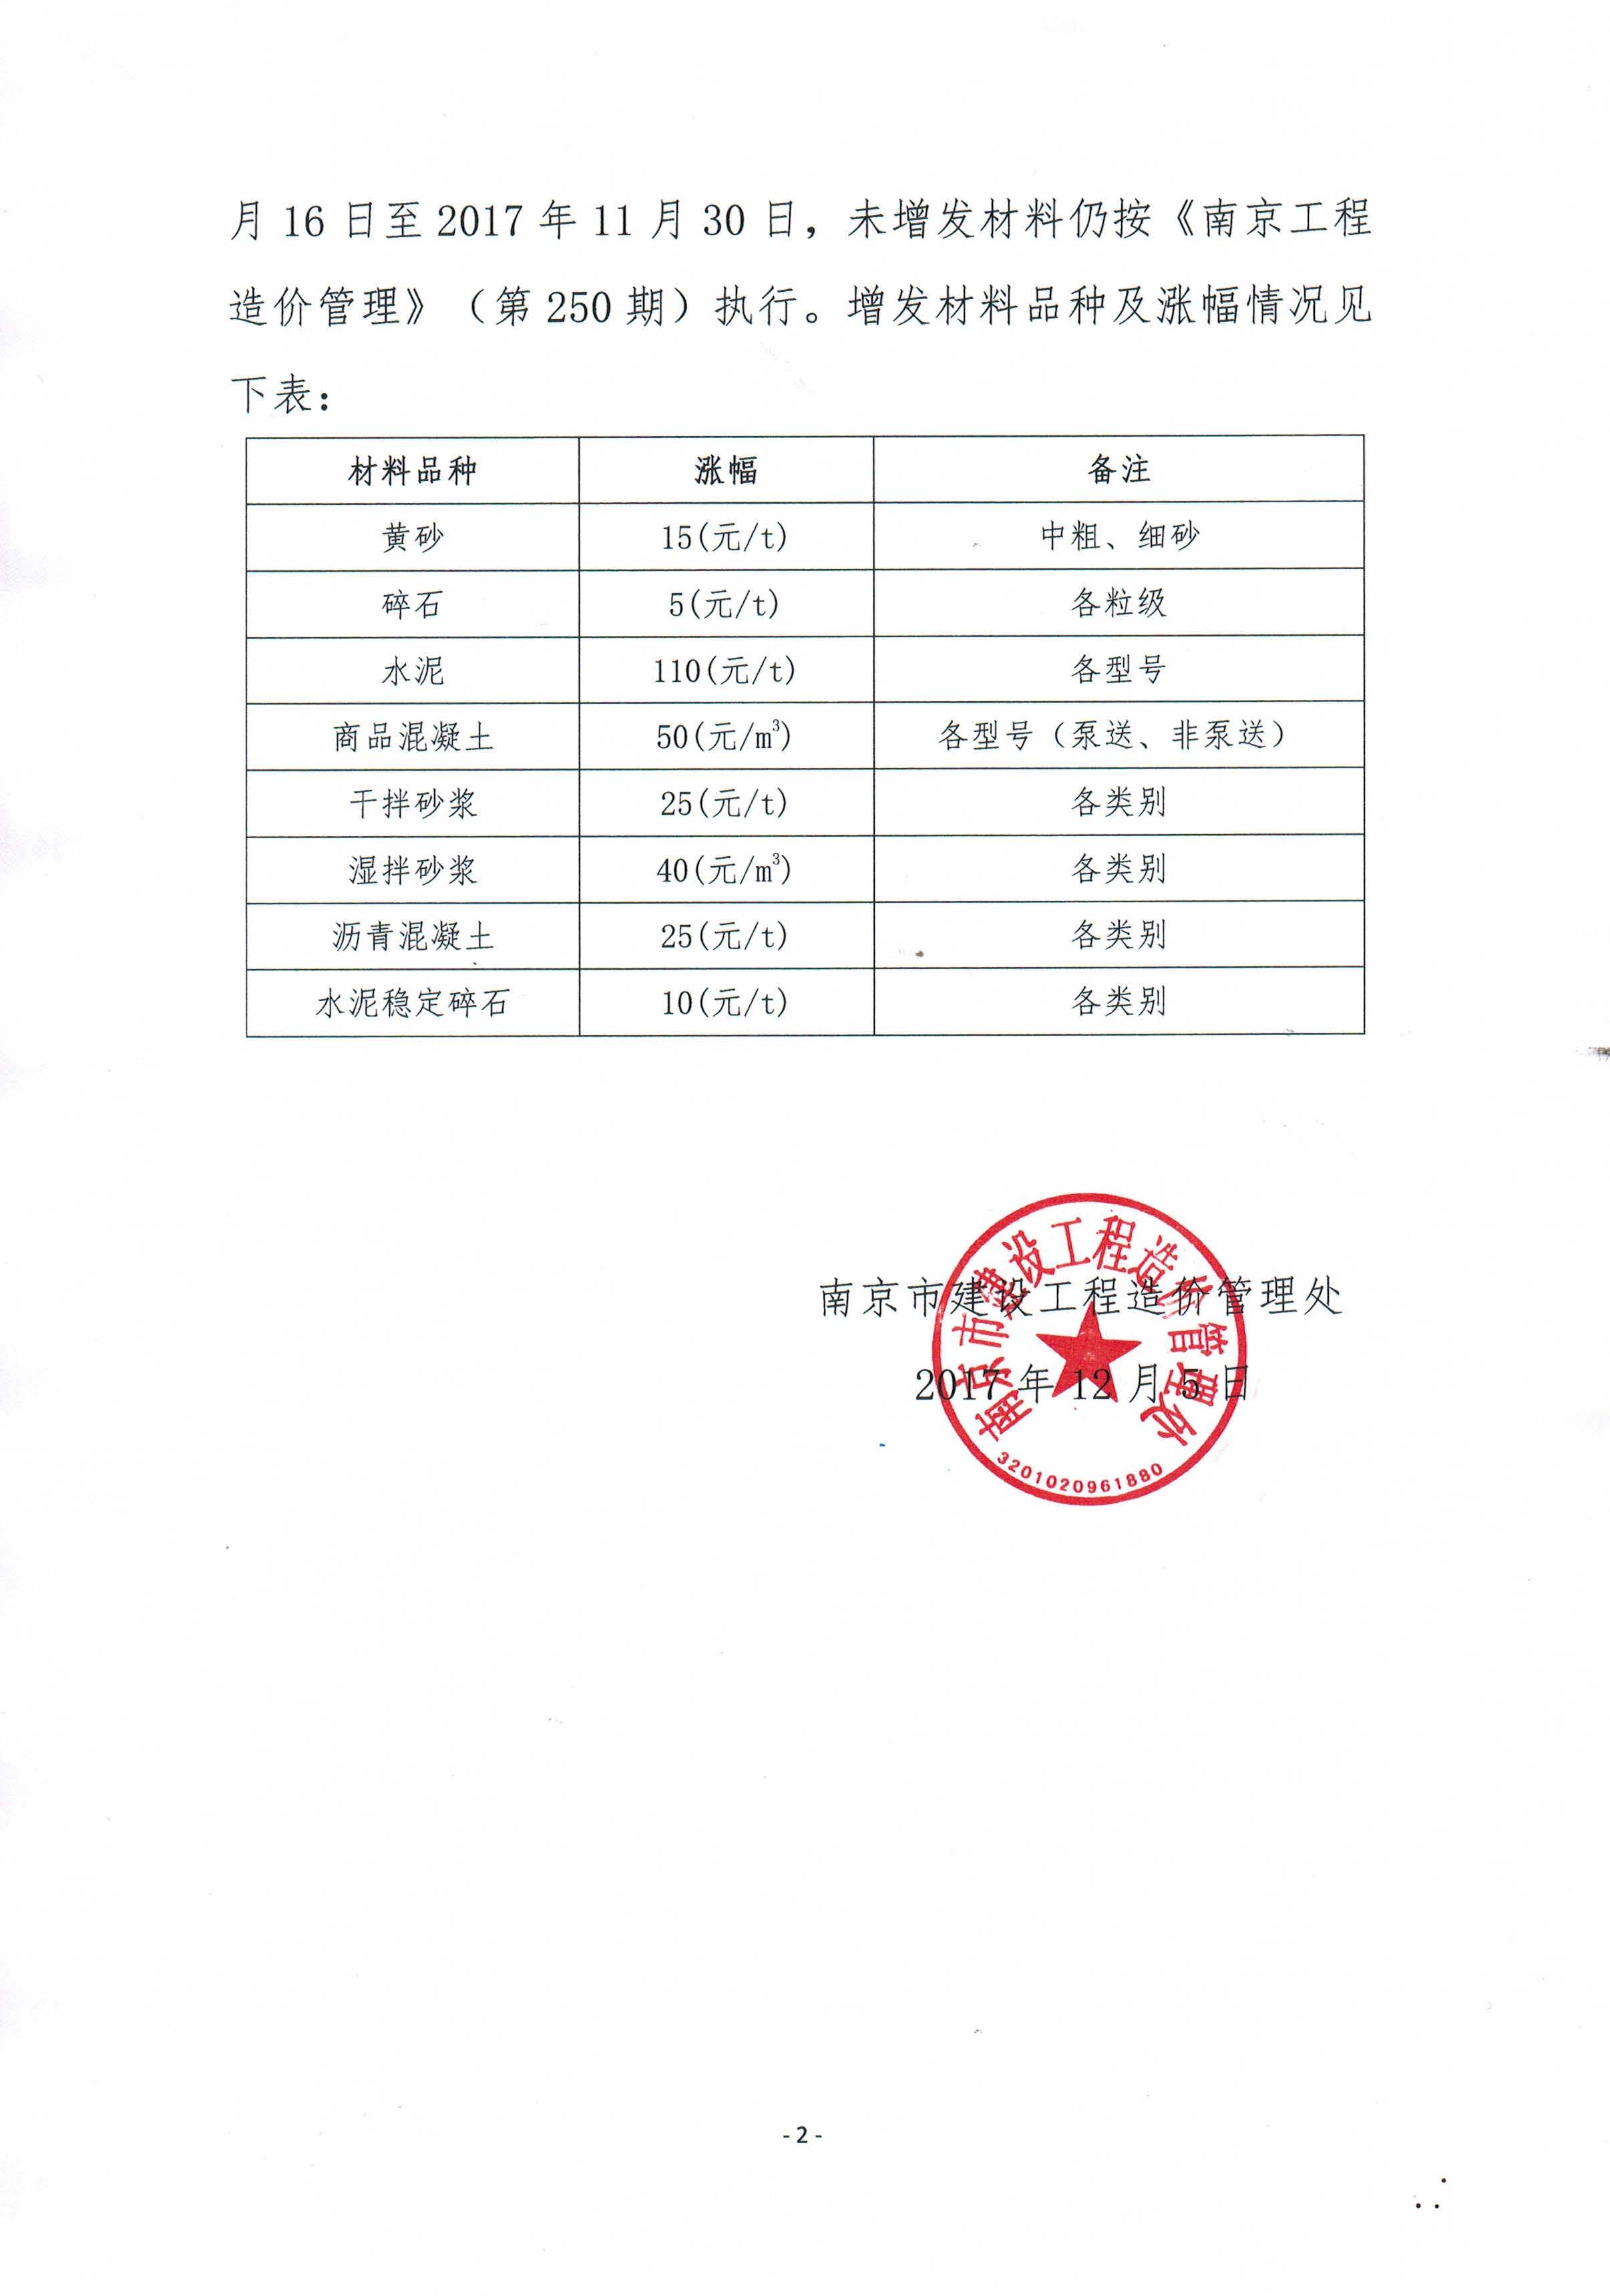 關于增發南京市部分材料市場指導價的通知